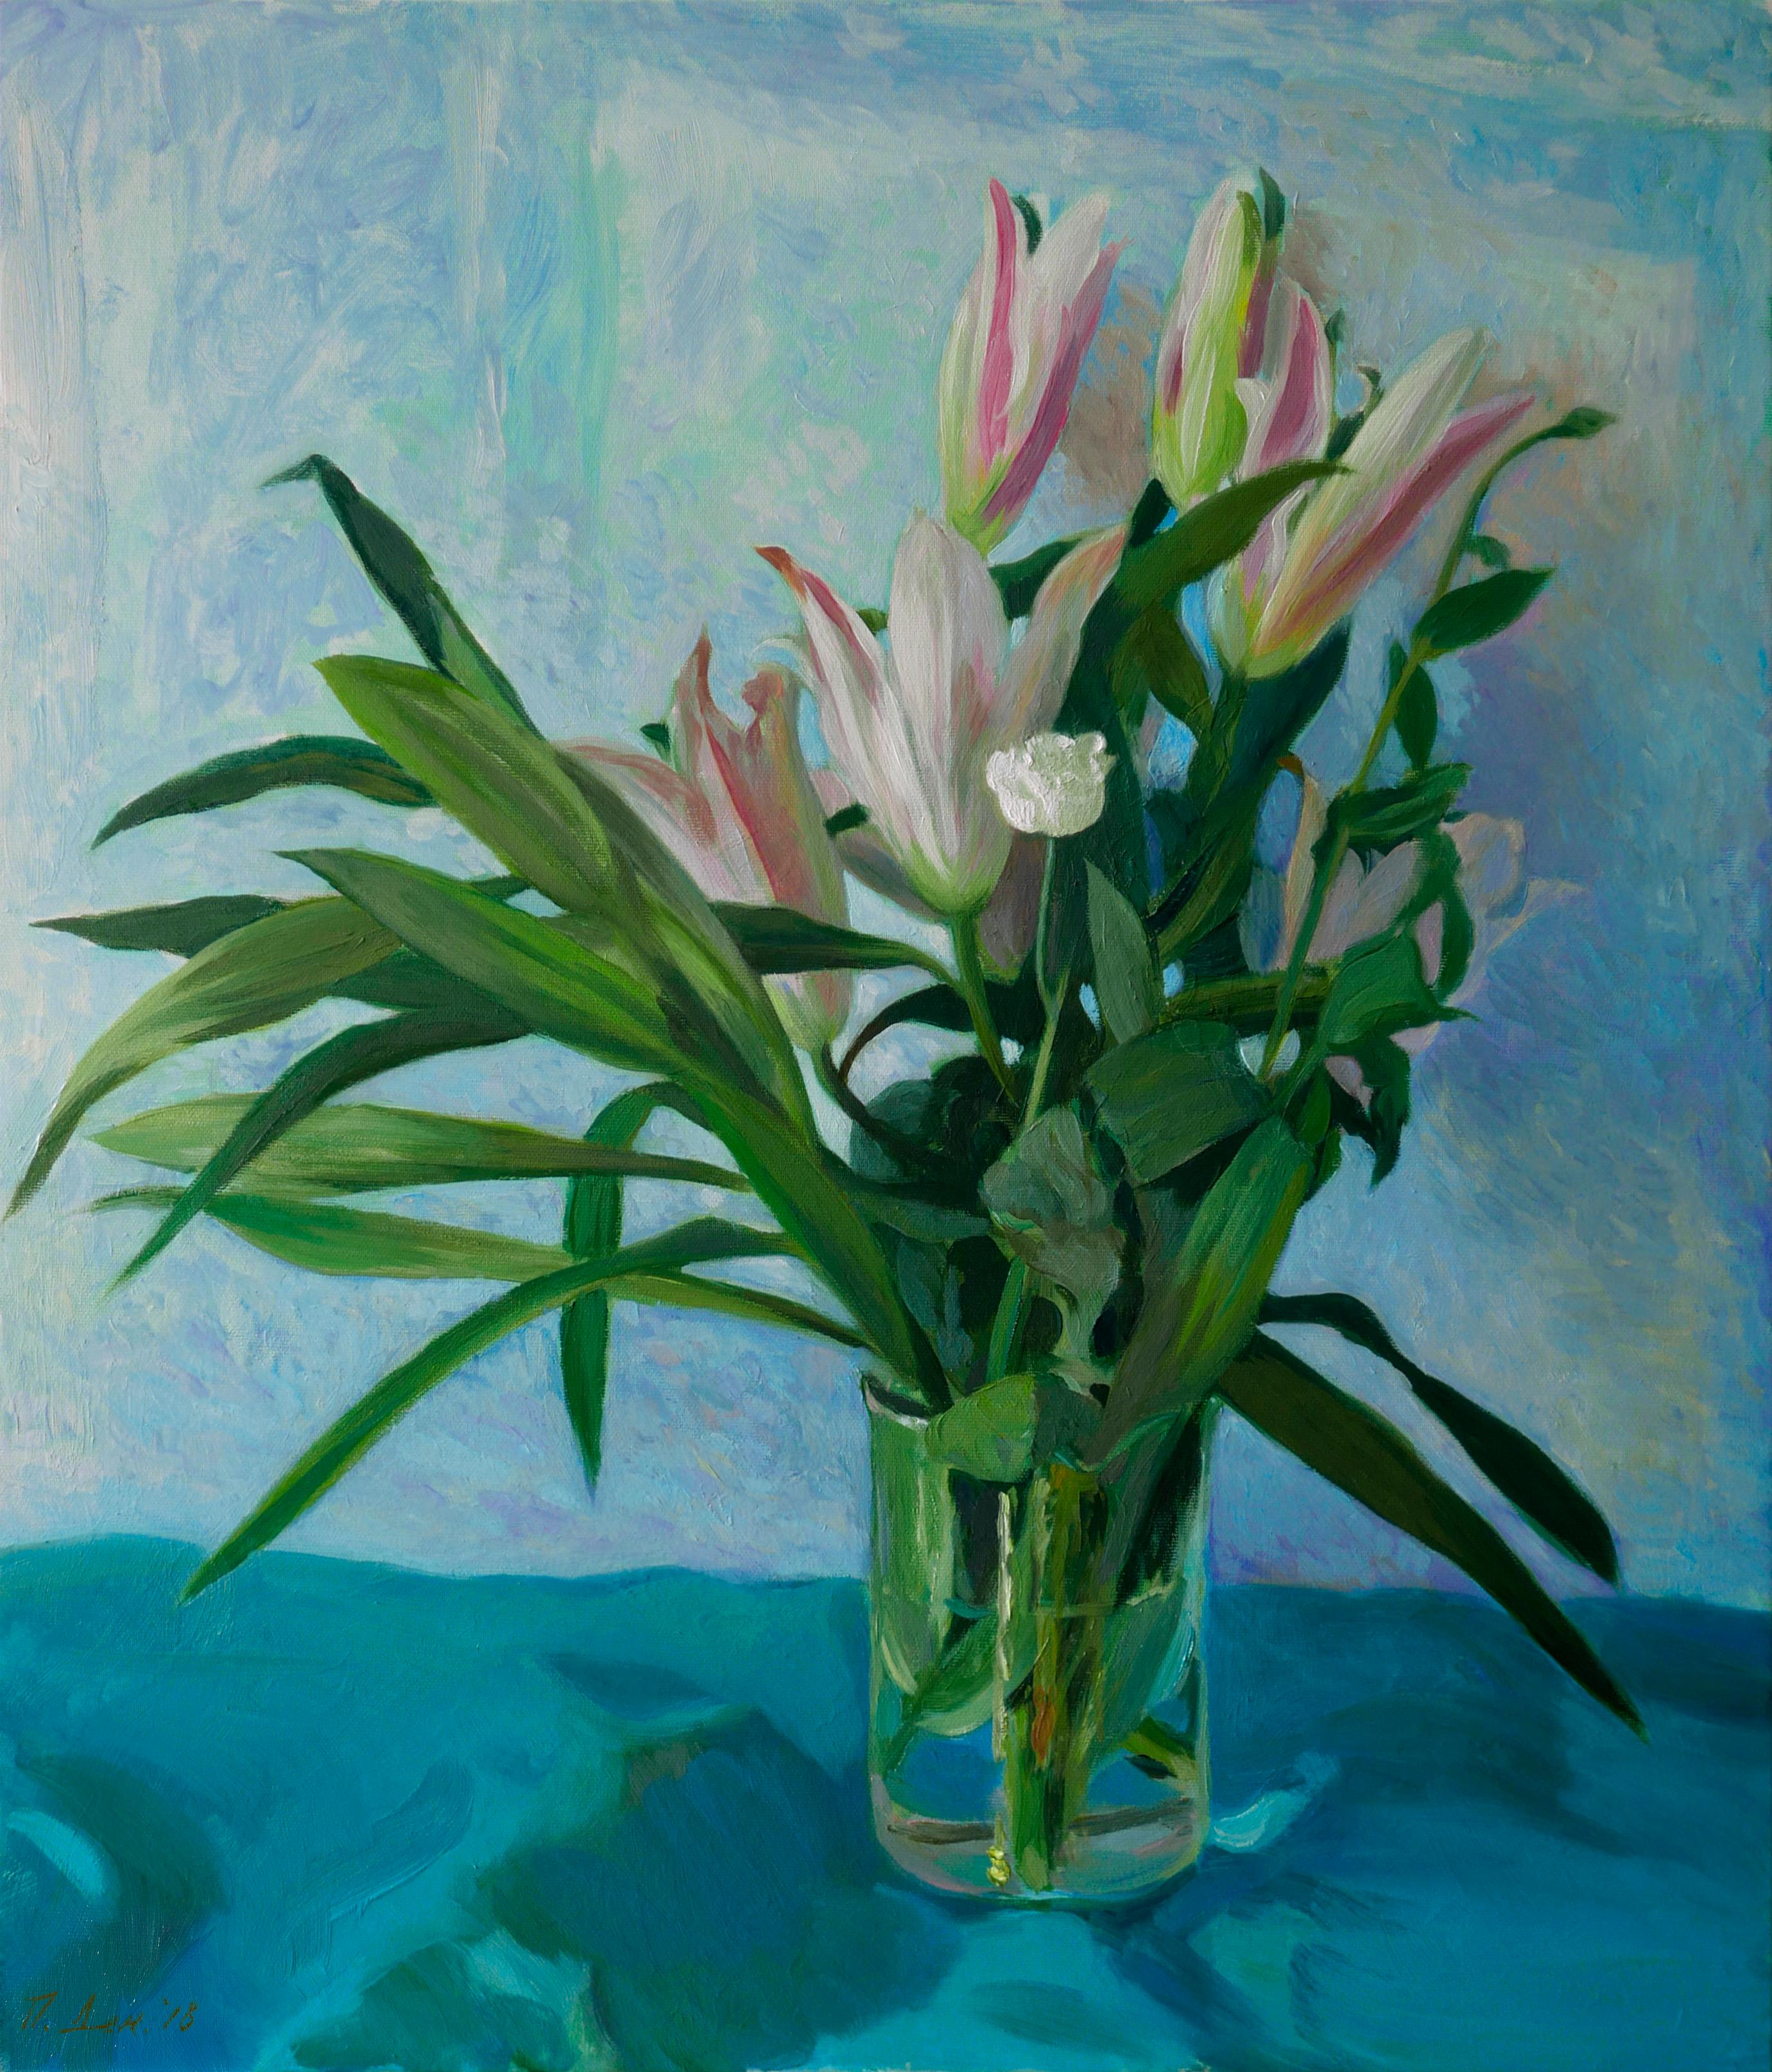 Petya Deneva Landscape Painting – In The Wild World Of The White Flower – Ölgemälde in Weiß, Grün, Rosa und Blau